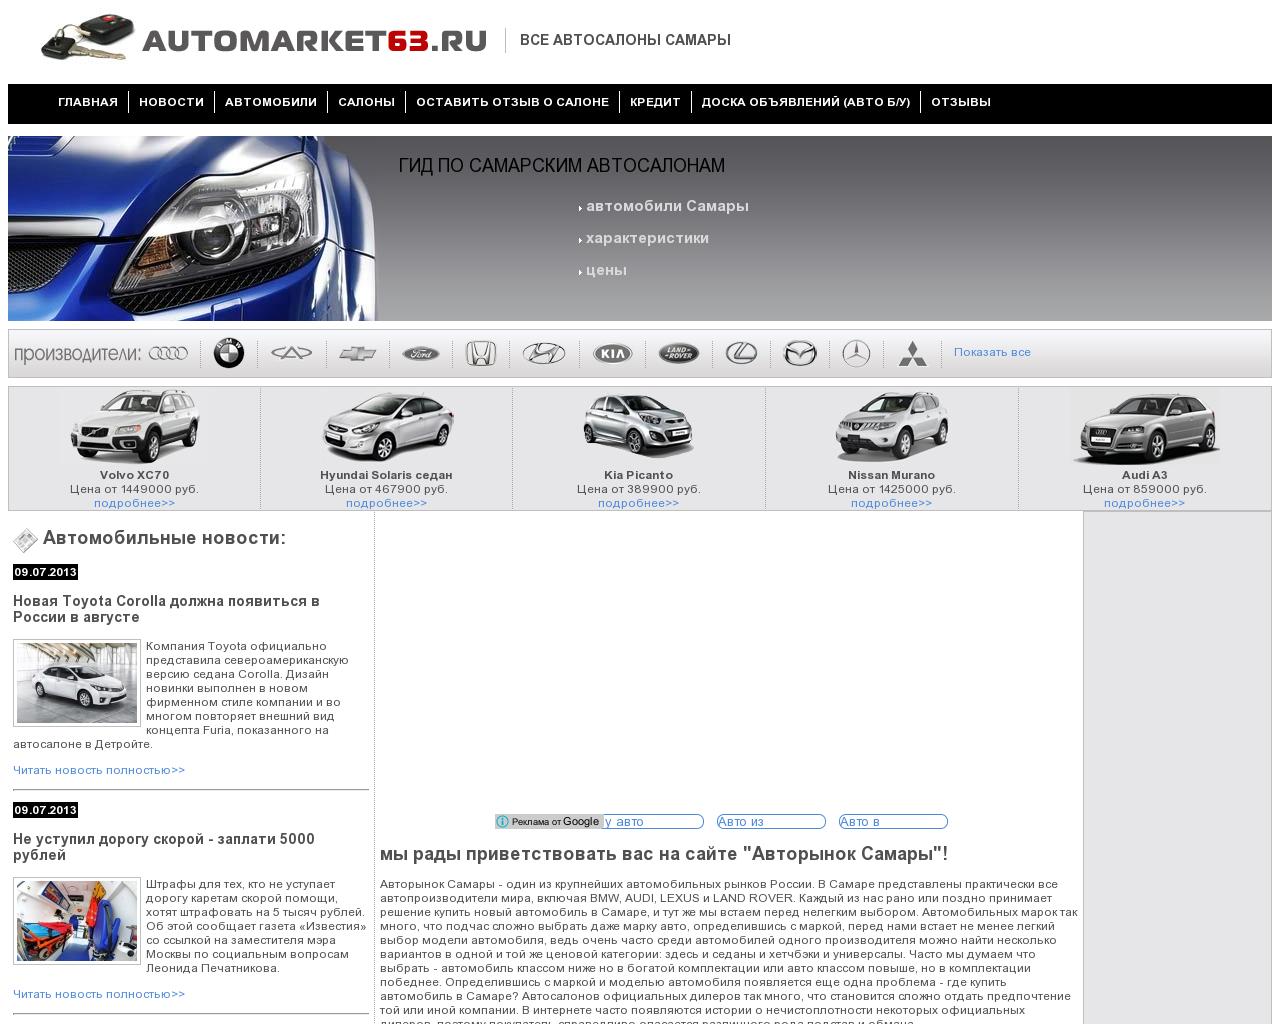 Изображение сайта automarket63.ru в разрешении 1280x1024